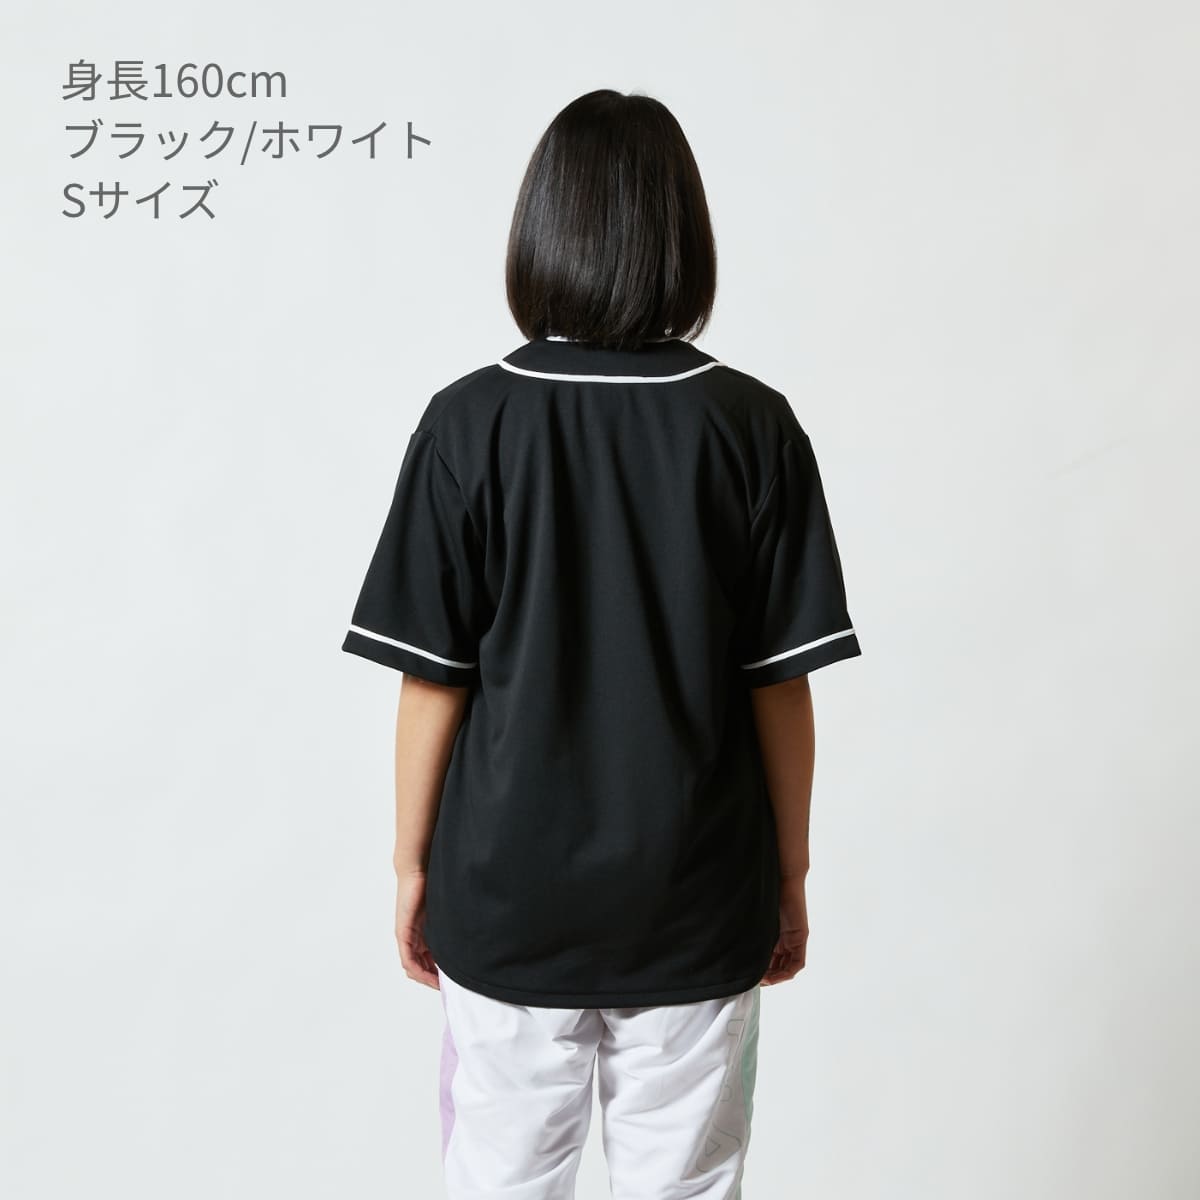 4.1オンス ドライアスレチック ベースボールシャツ | メンズ | 1枚 | 5982-01 | カナリアイエロー/ブラック